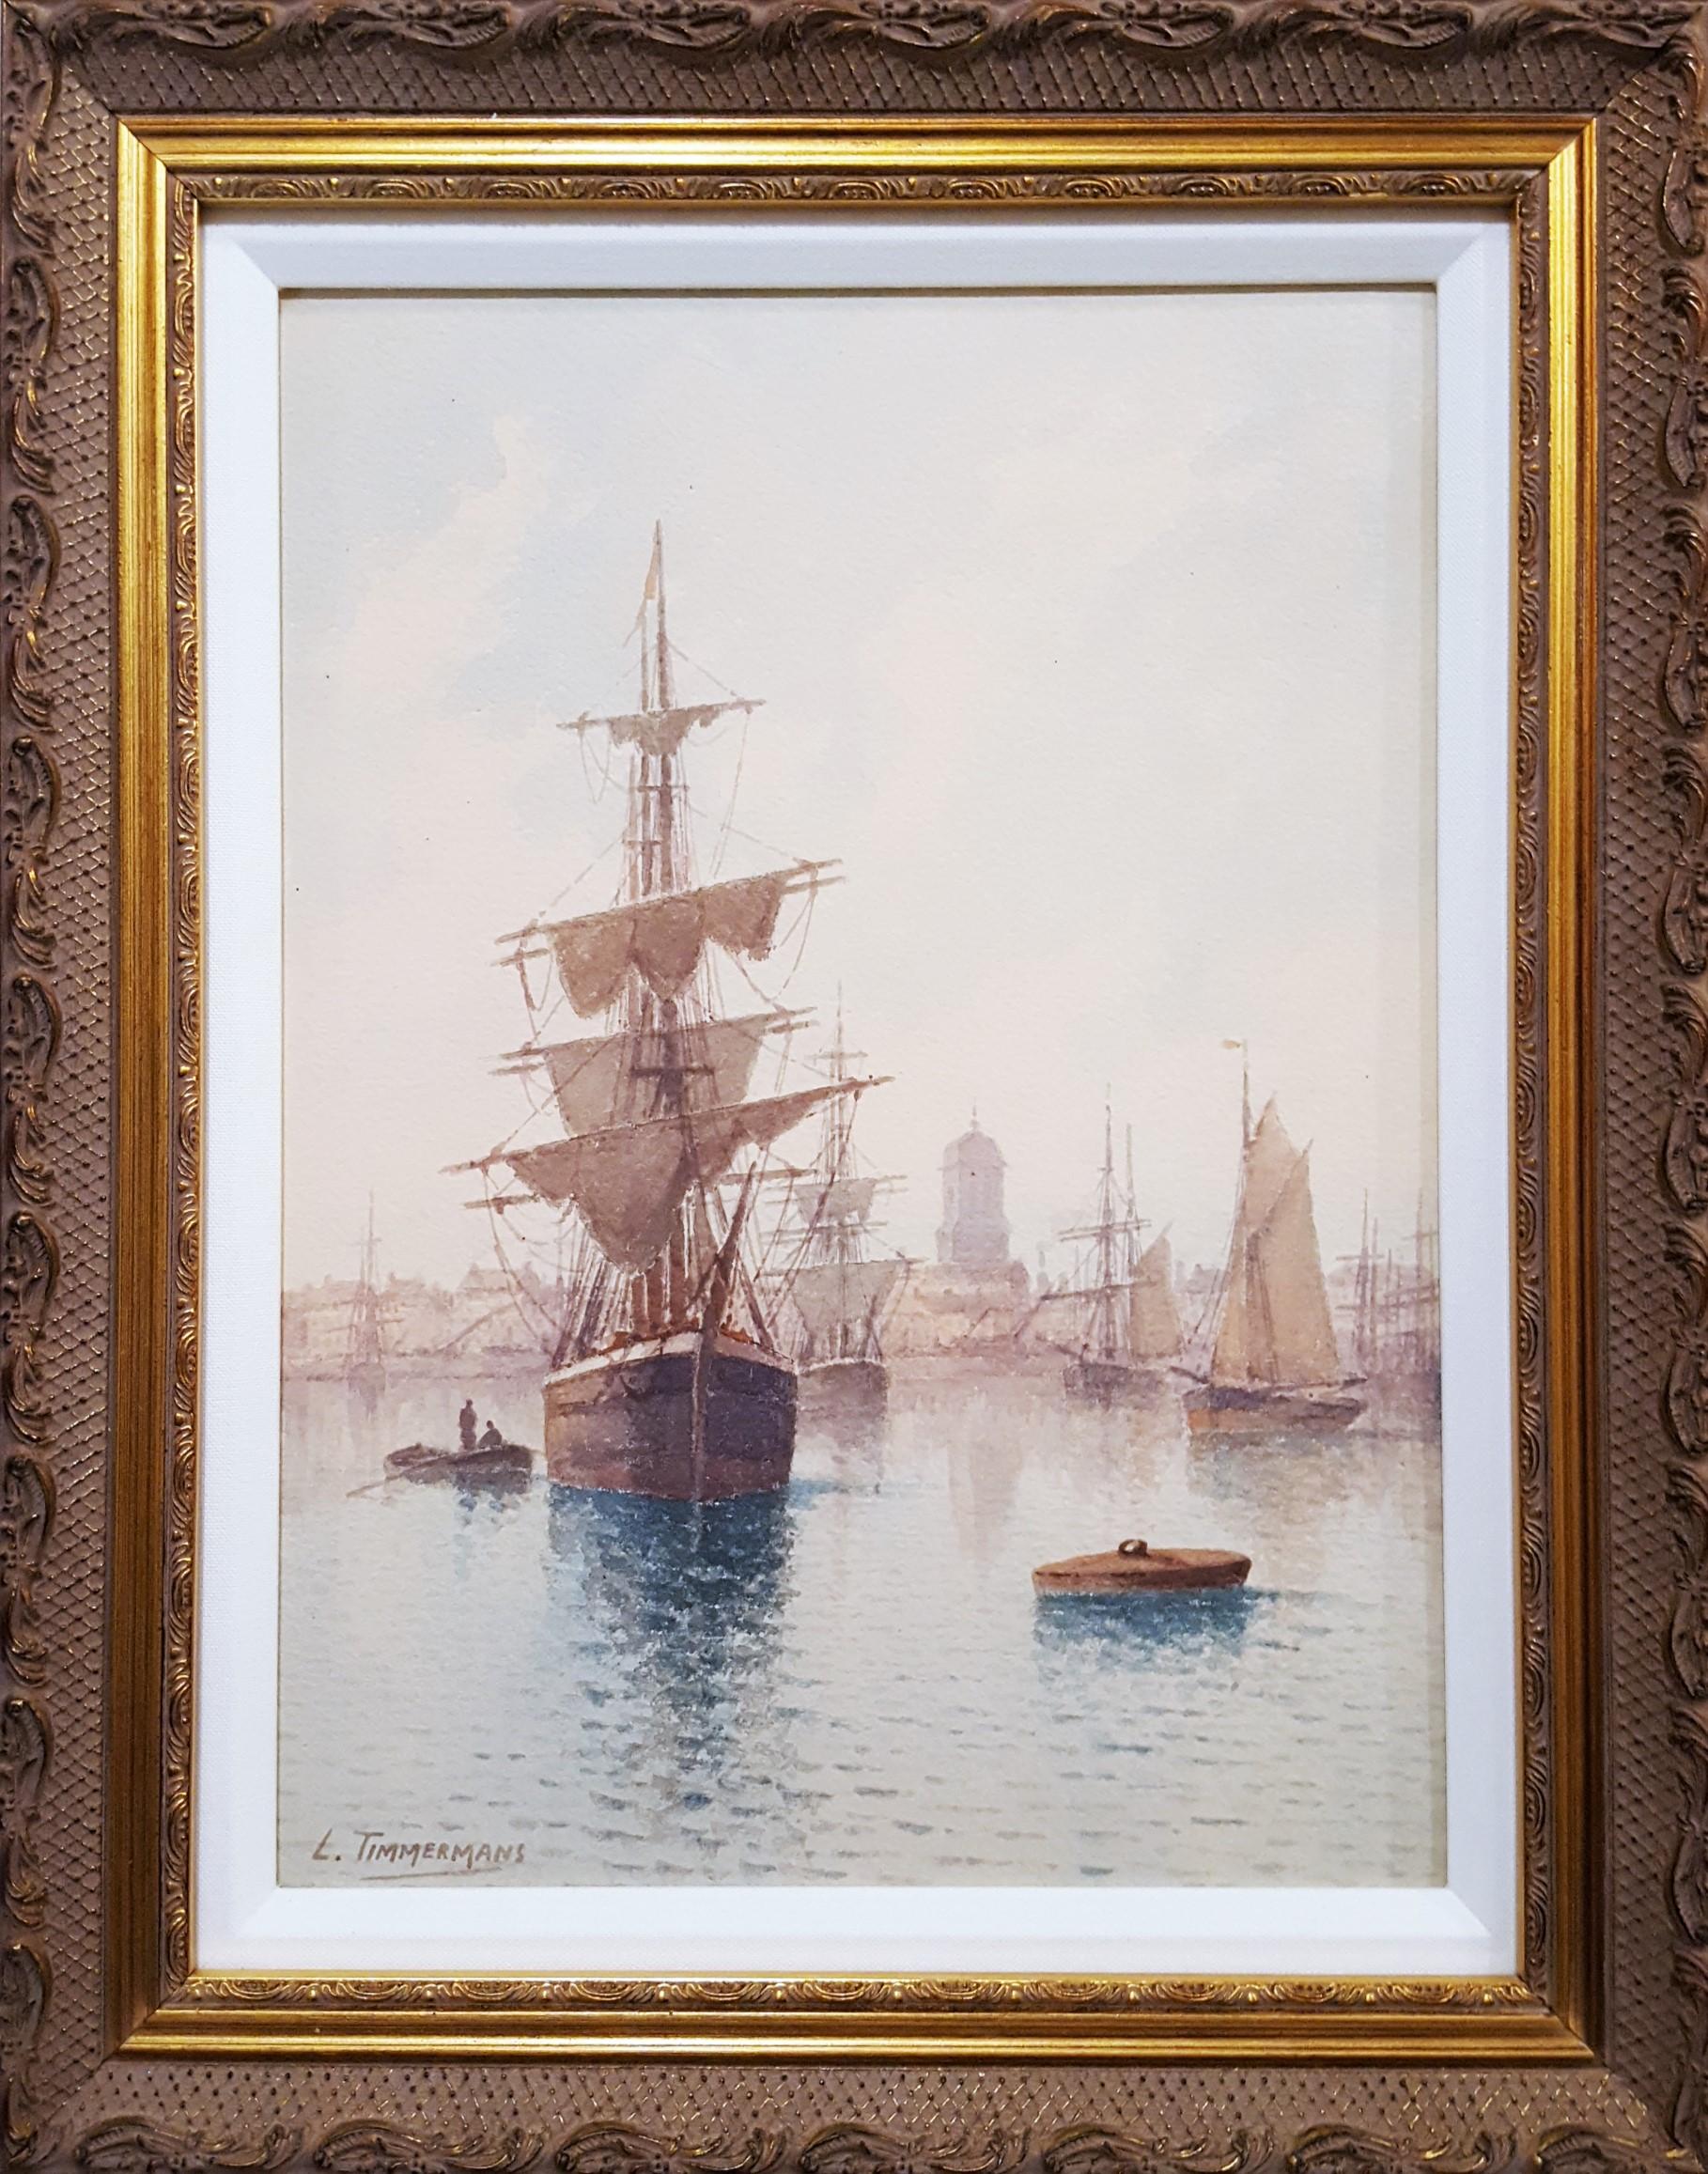 Voiliers à Quai (Sailboats at the Dock) /// Maritime Seascape Ship Watercolor - Art by Louis Étienne Timmermans